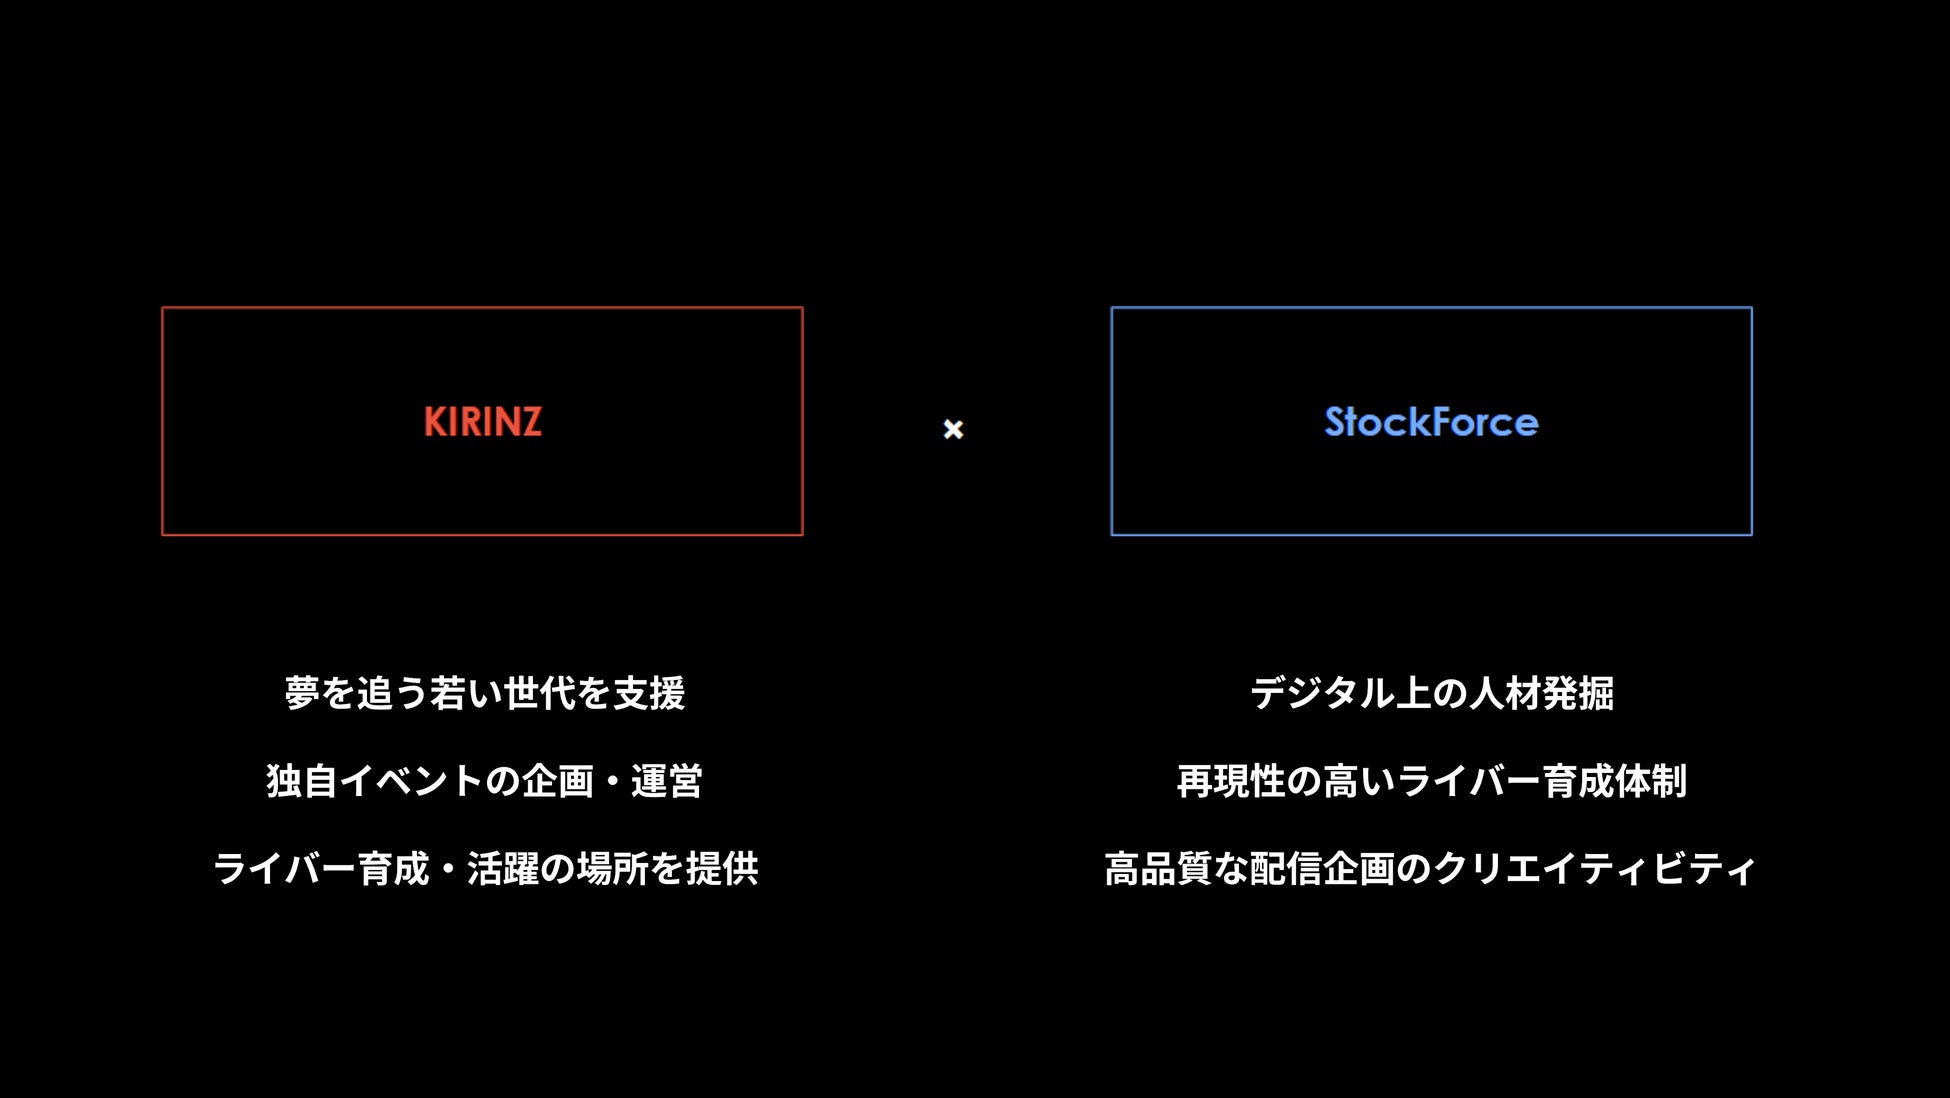 【株式会社KIRINZ】株式会社StockForceをM&Aし、経営統合を完了ライブ配信市場のさらなる成長に向け、平成生まれの経営者同士が両社の強みを融合のサブ画像2